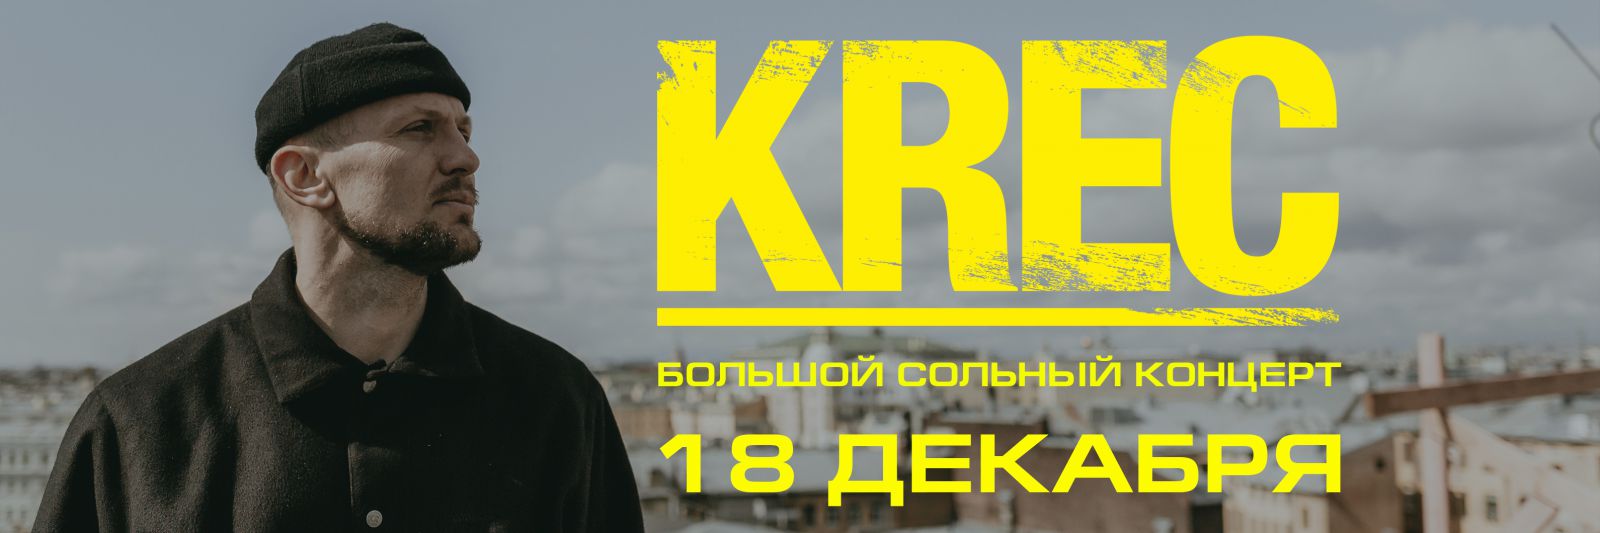 KREC | 18.12 | Ярославль